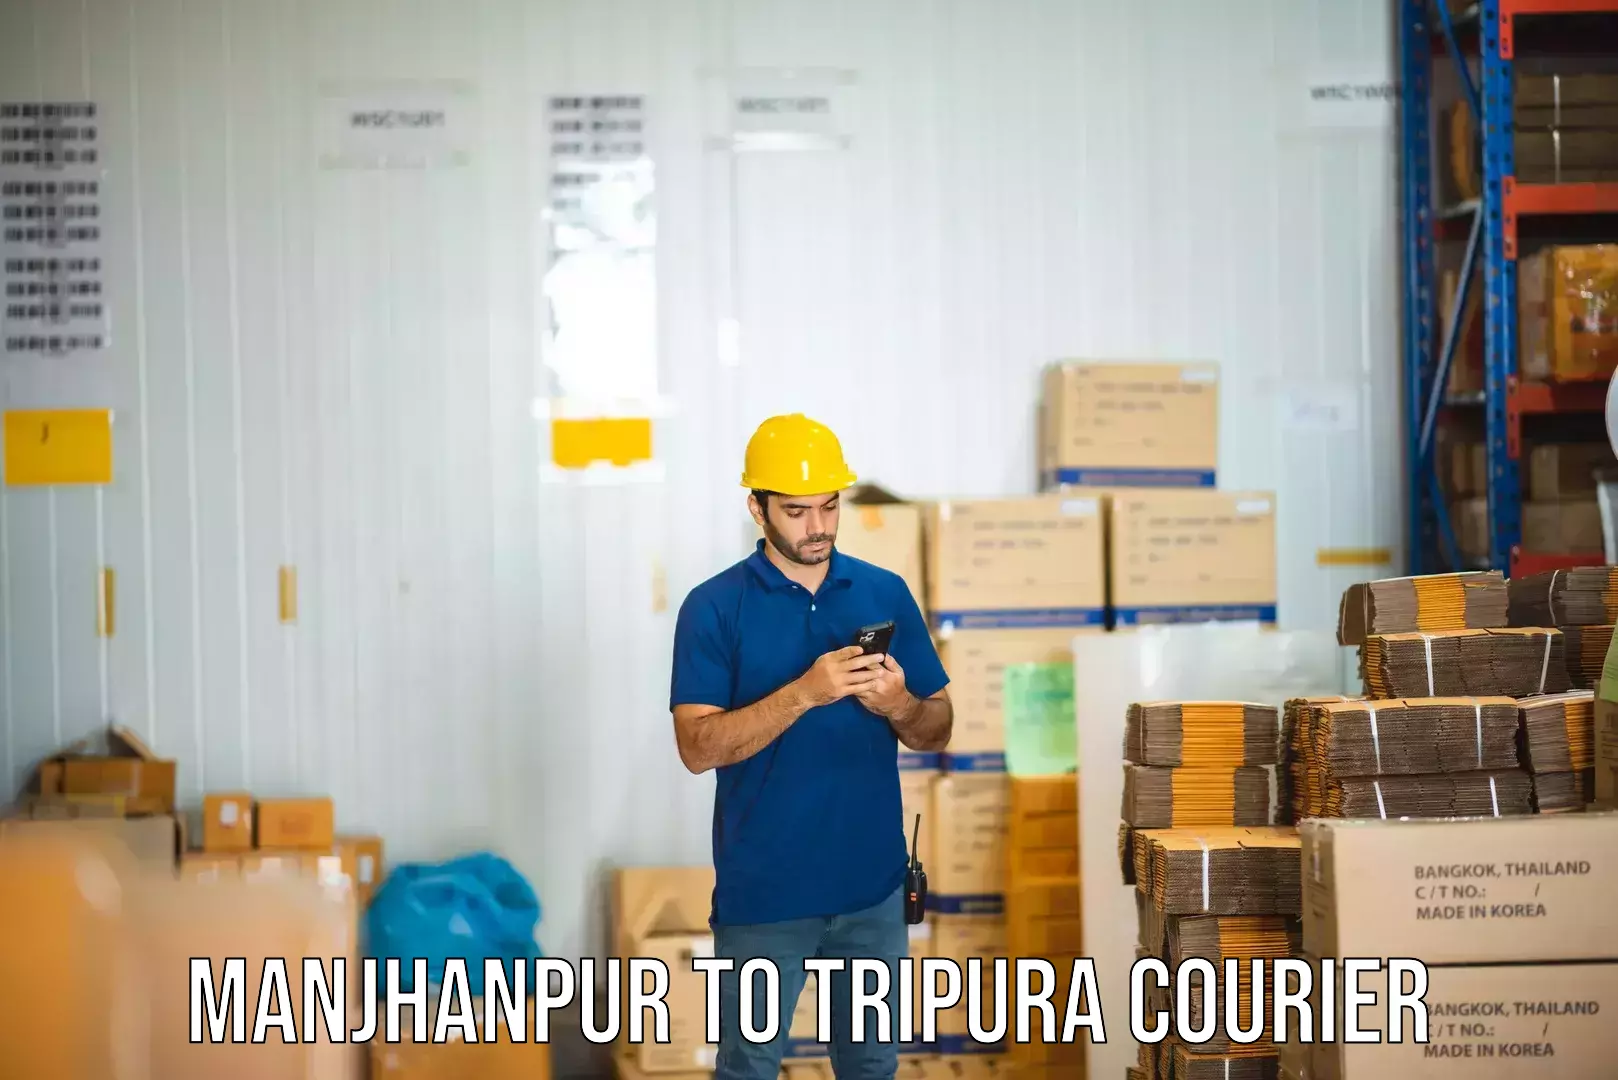 Optimized shipping routes Manjhanpur to Kailashahar